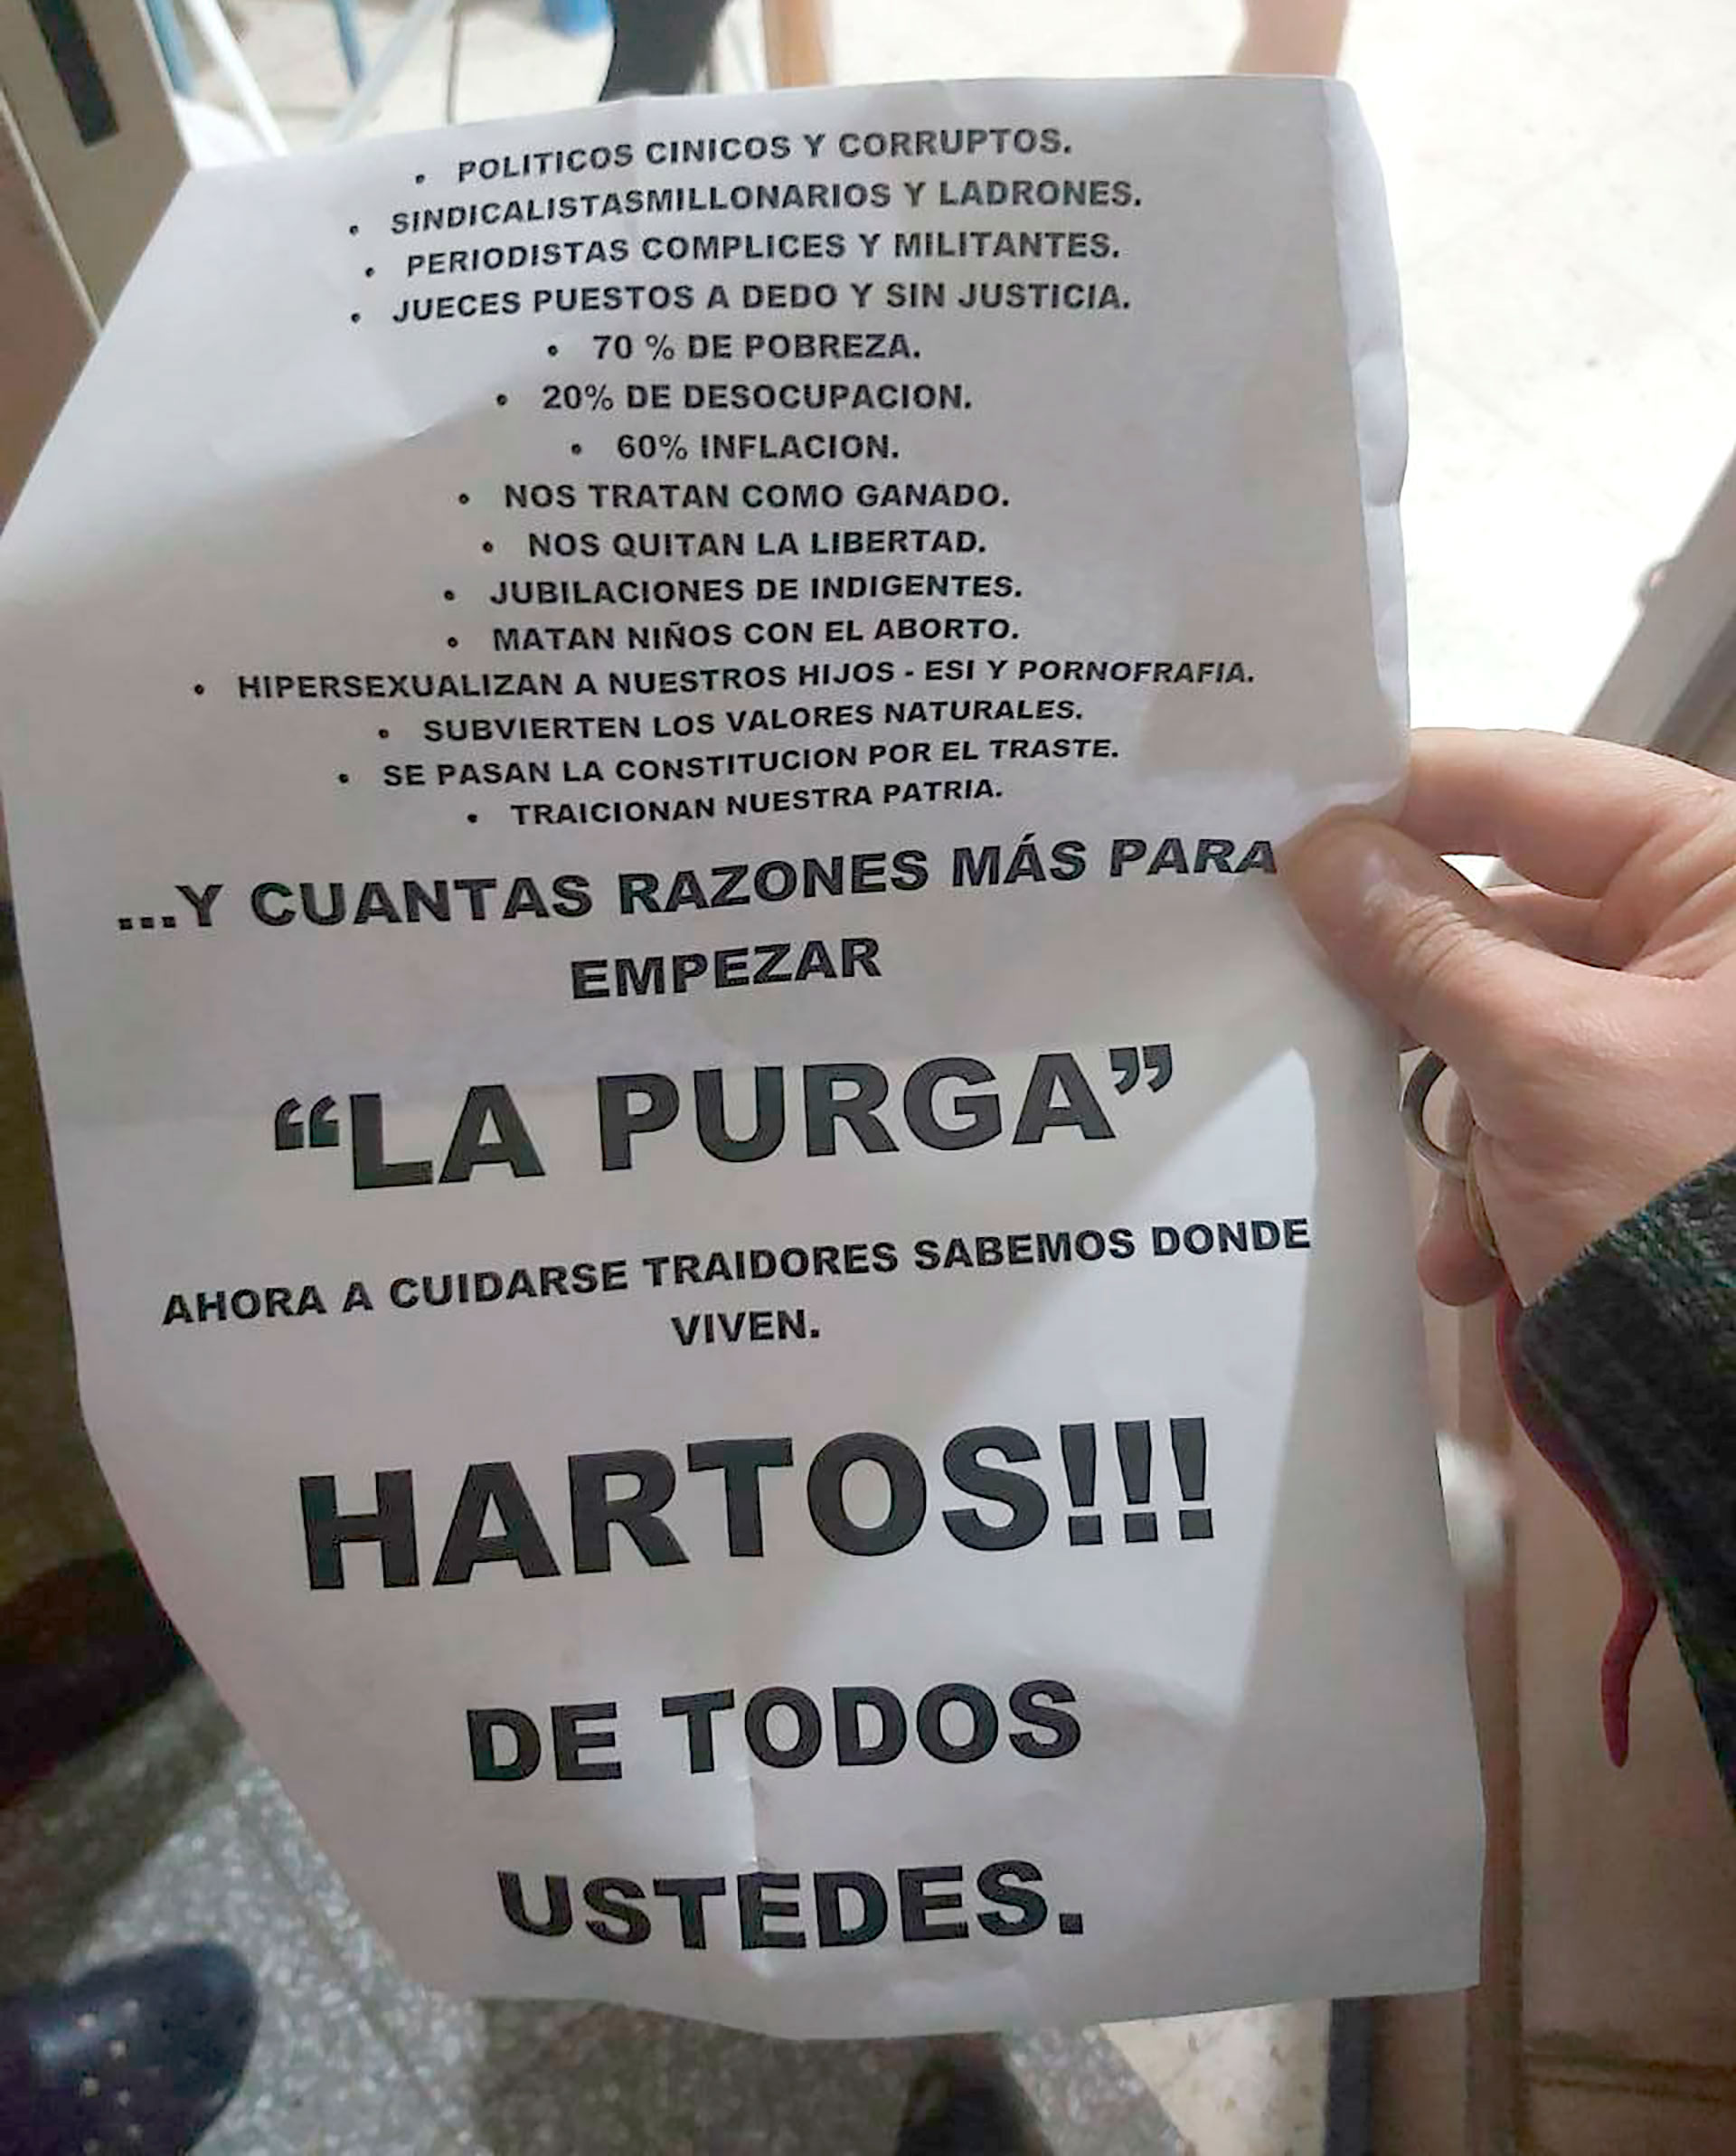 El mensaje del panfleto que apareció entre los escombros del local de La Cámpora en Bahía Blanca